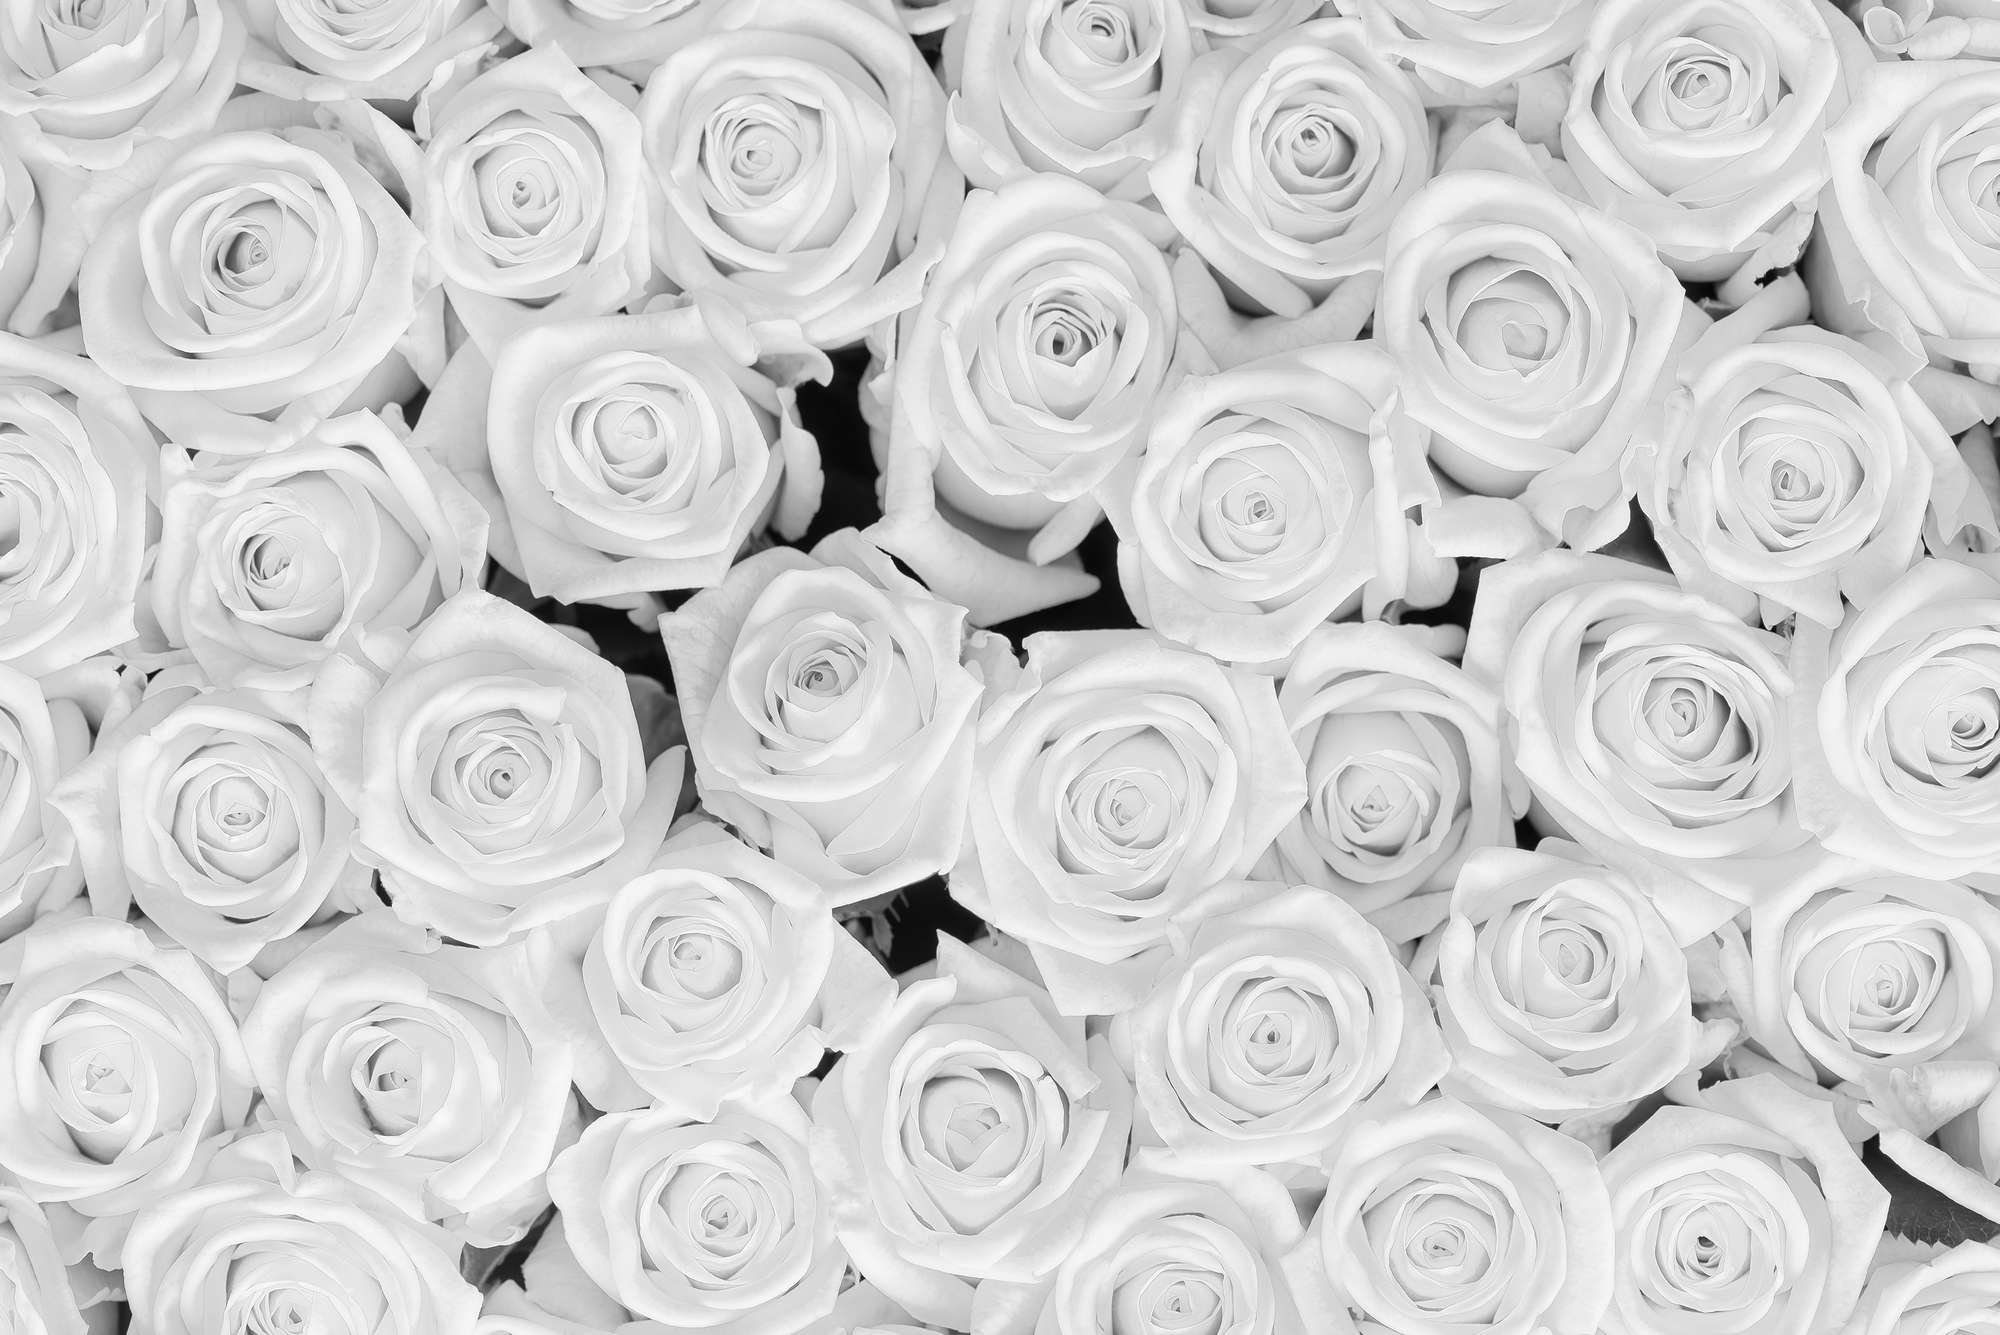             Piante Carta da parati Rose bianche su vello liscio madreperlato
        